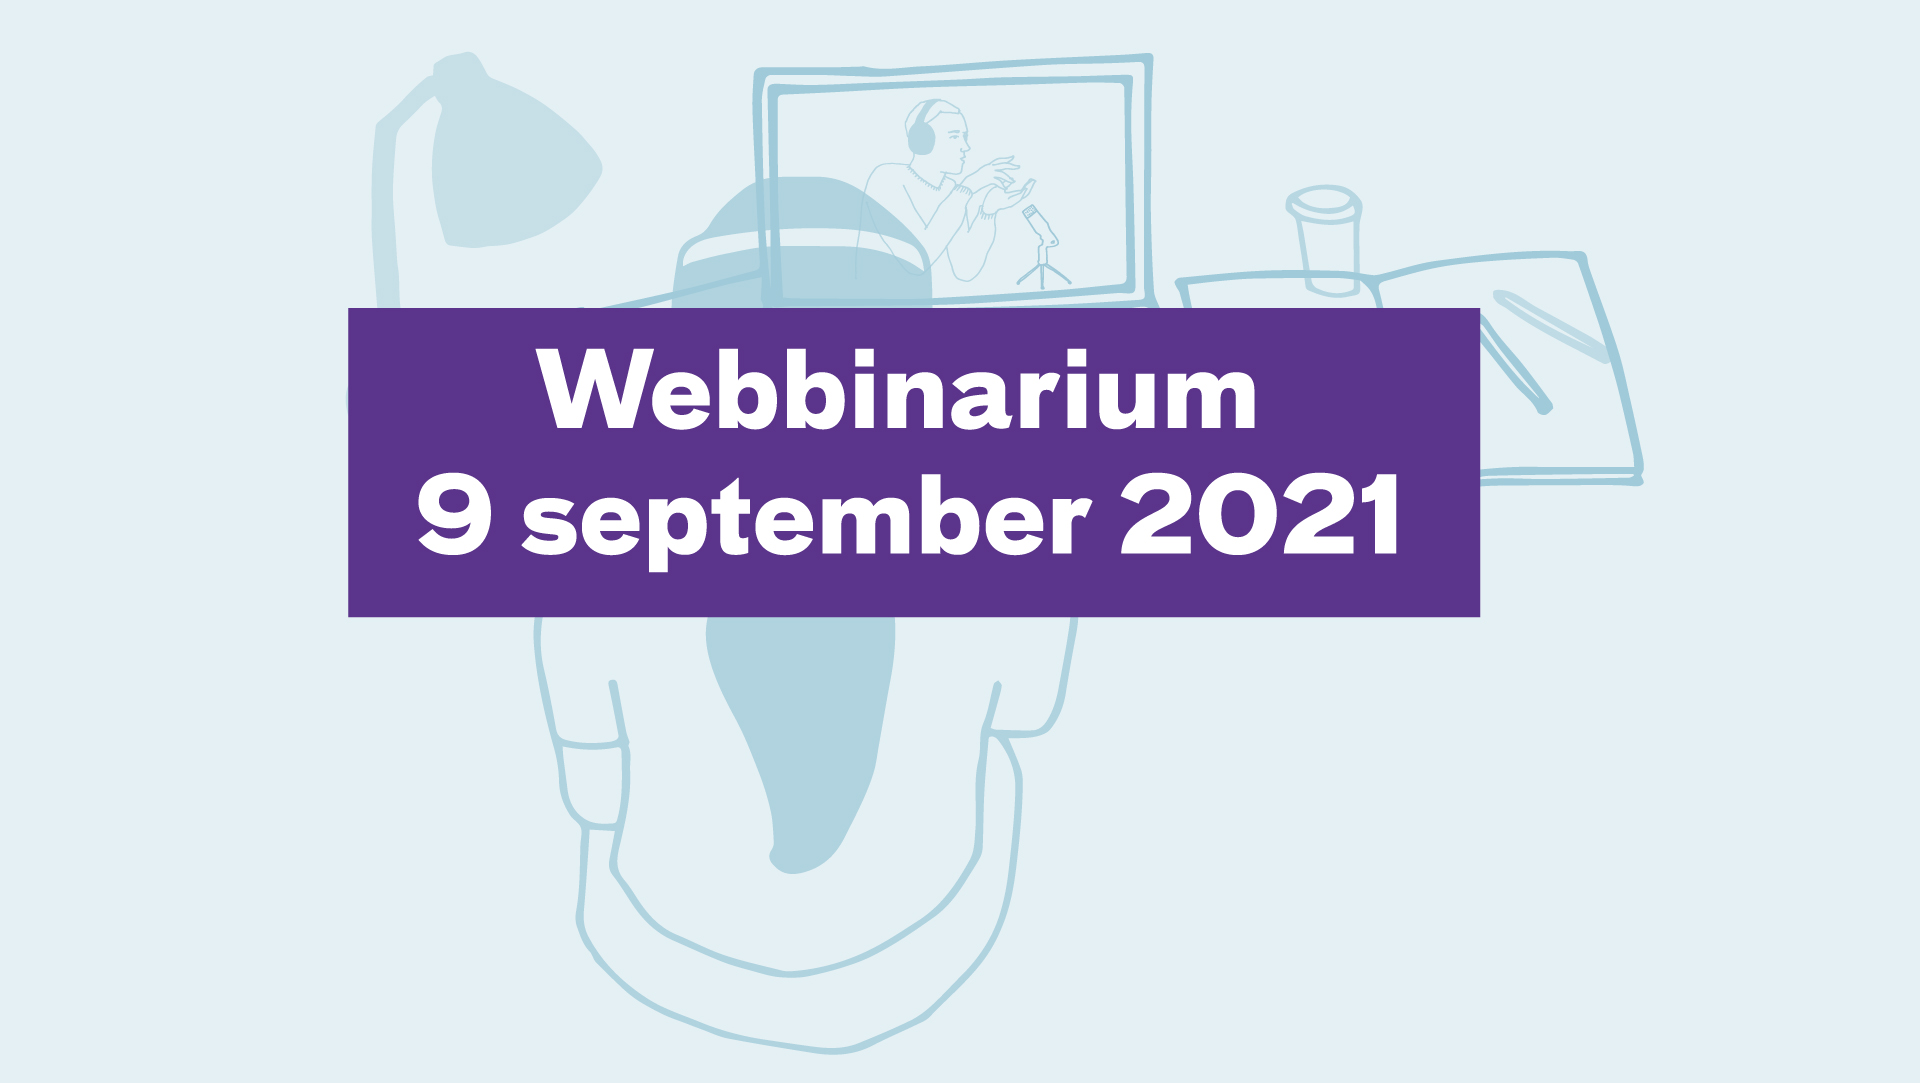 Webbinarium 9 september 2021